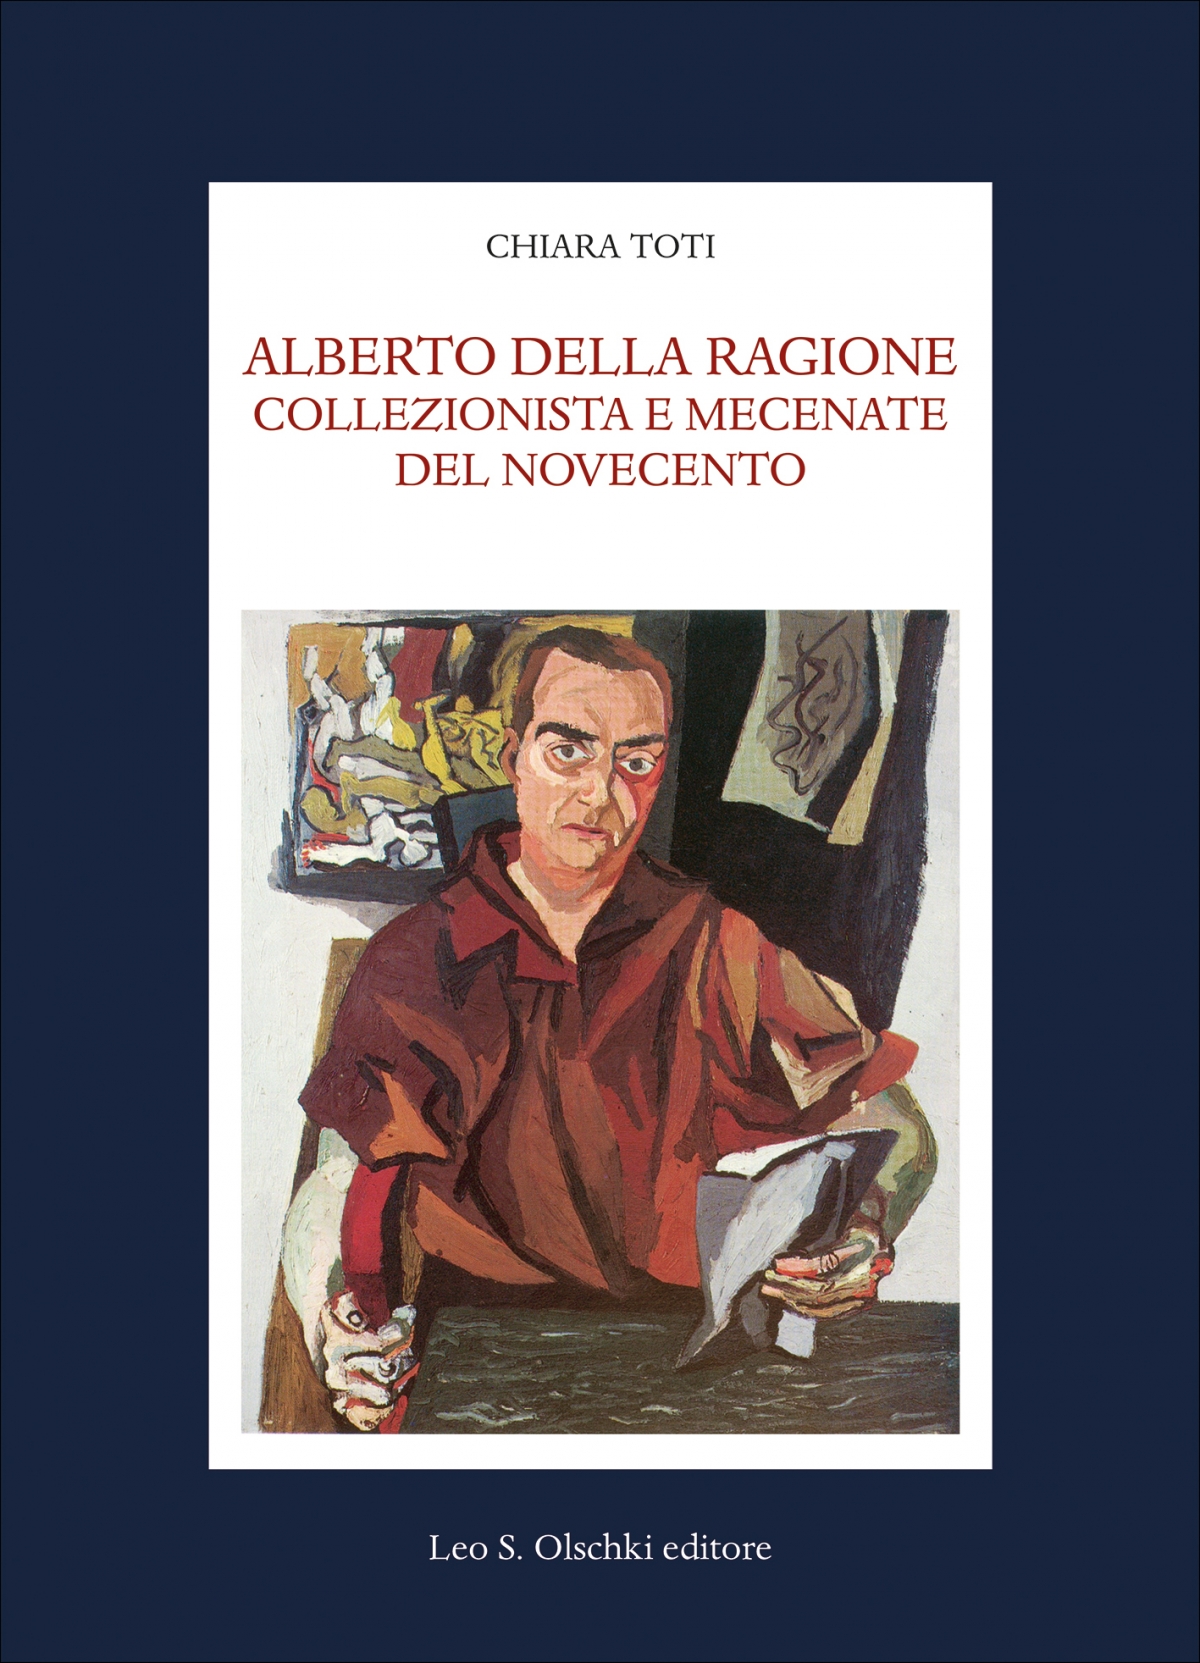 Alberto Della Ragione  collezionista e mecenate del Novecento